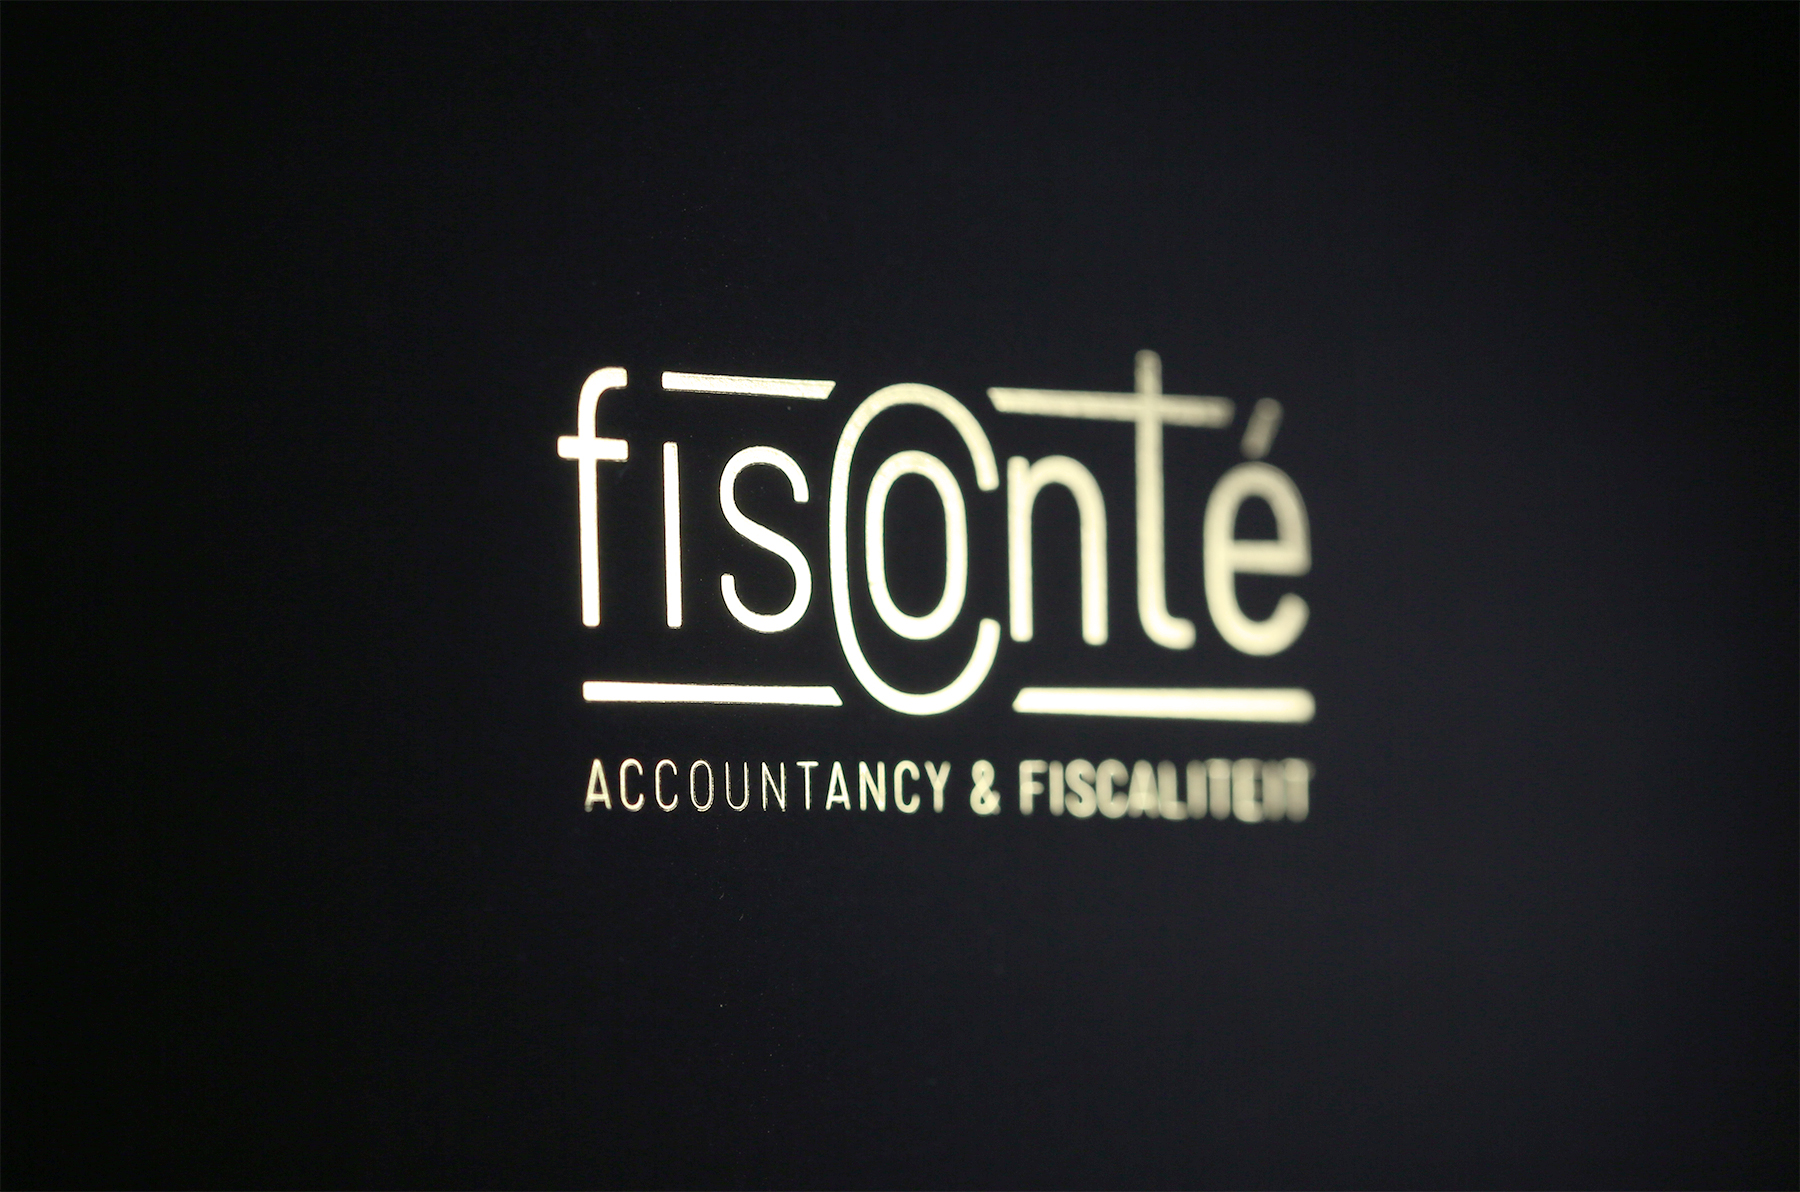 Rebranding Fisconte